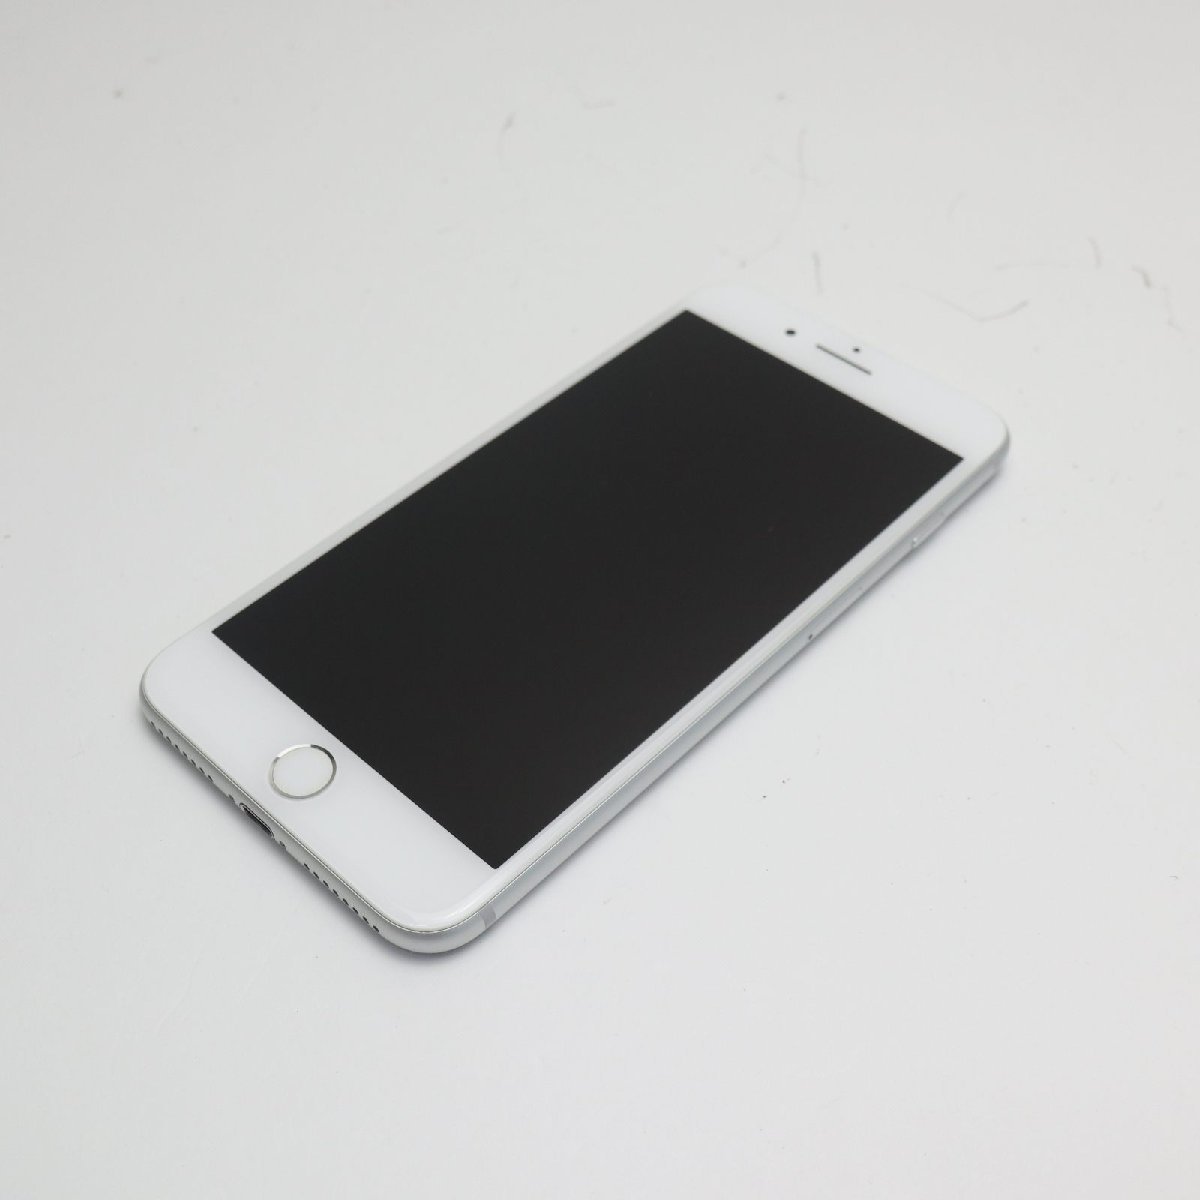 超美品 SIMフリー iPhone7 PLUS 128GB シルバー 即日発送 スマホ apple 本体 中古 白ロム あすつく 土日祝発送OK